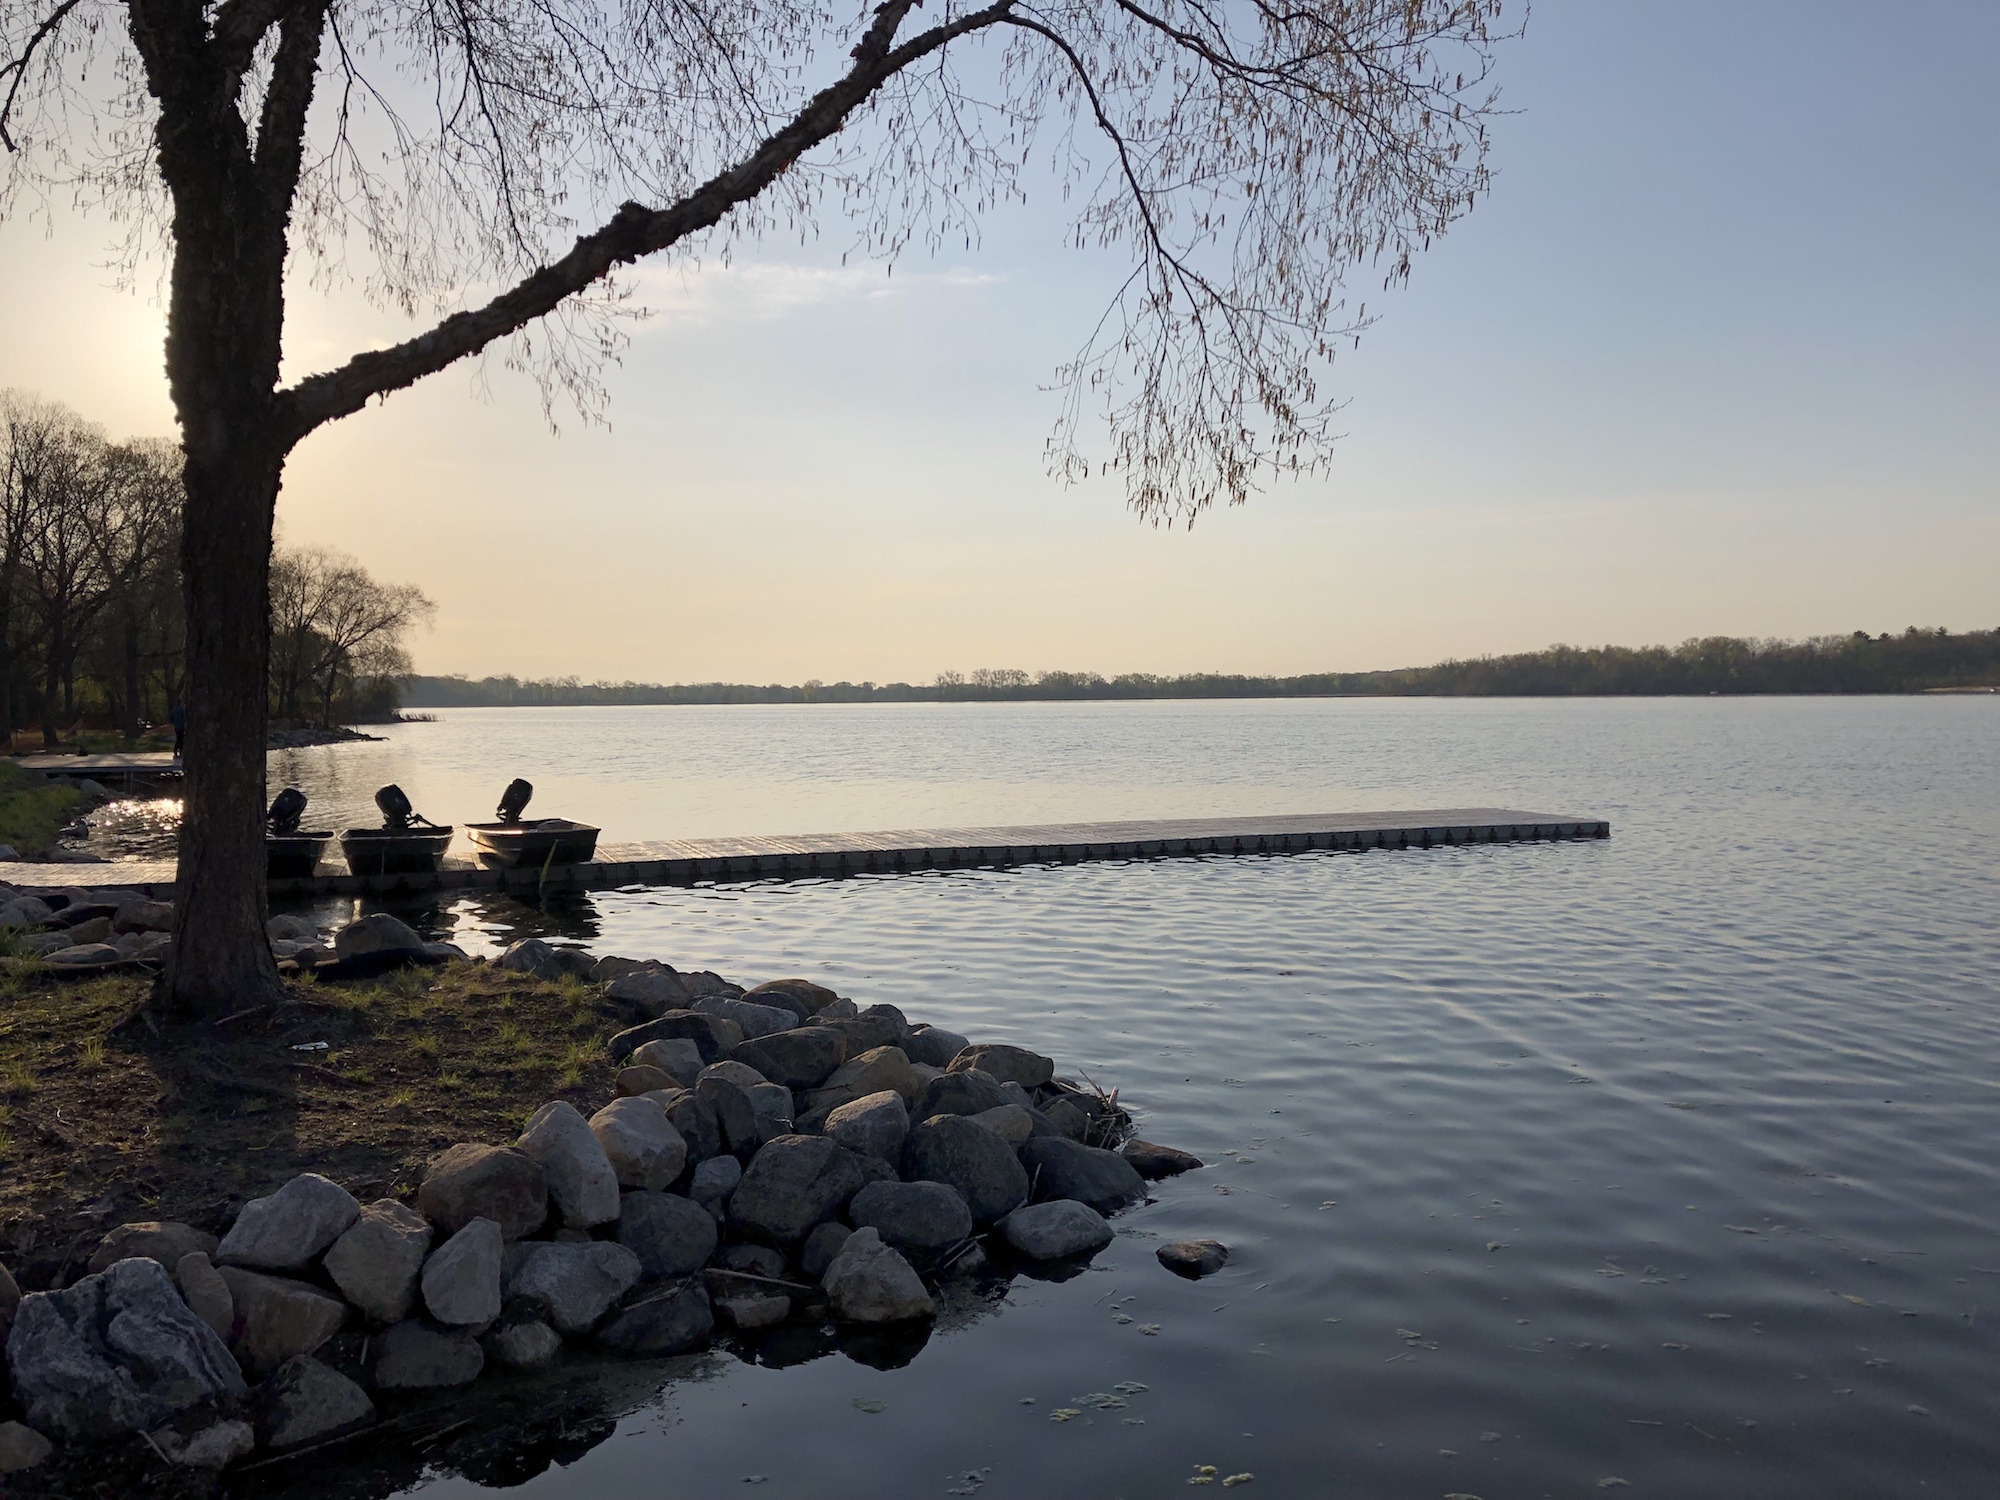 Lake Wingra on May 5, 2019.